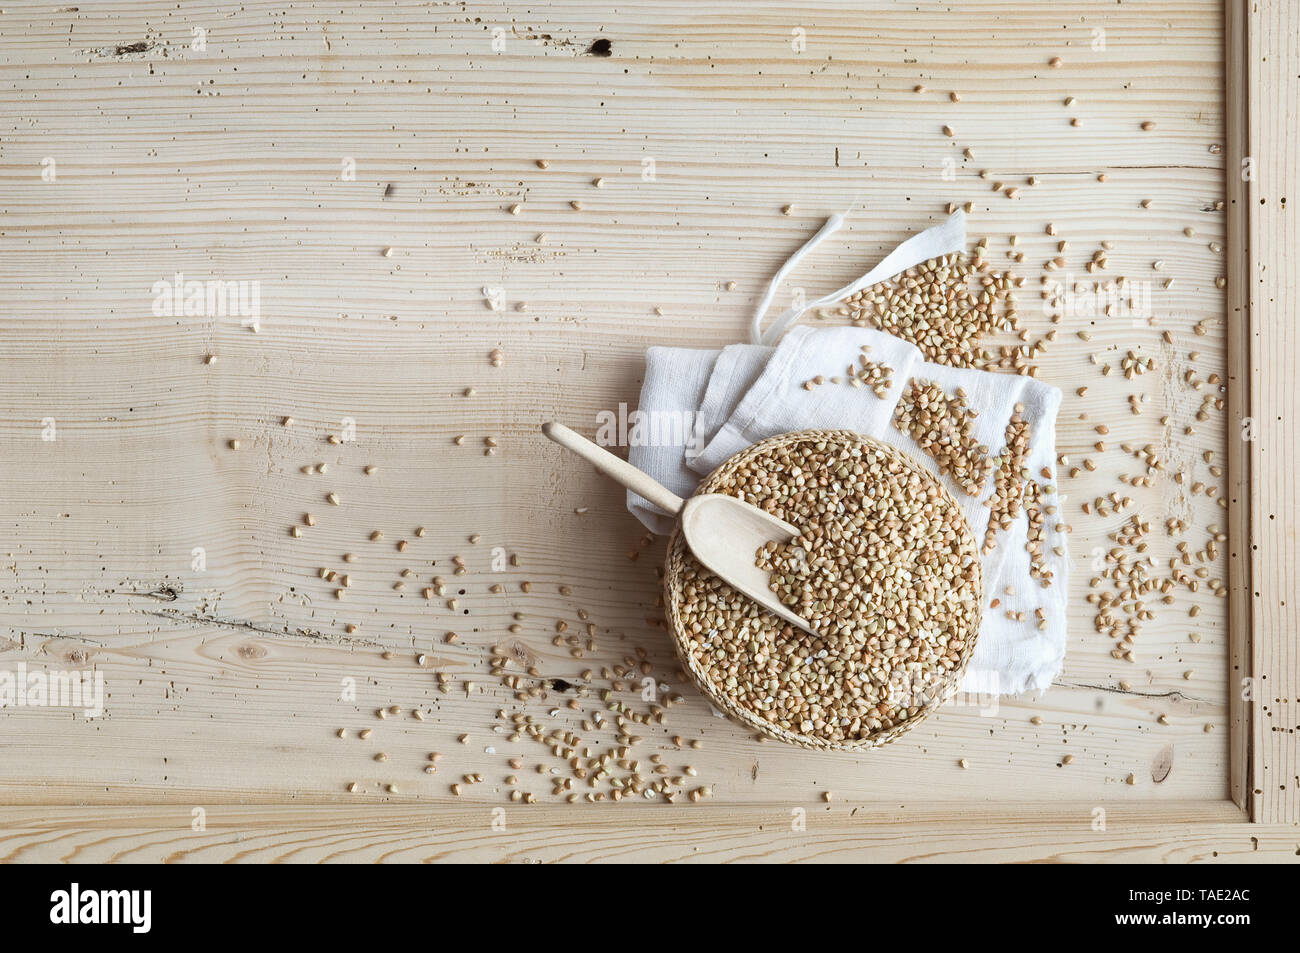 Organici di grano saraceno, grani interi di tiglio ciotola su legno, dal di sopra Foto Stock